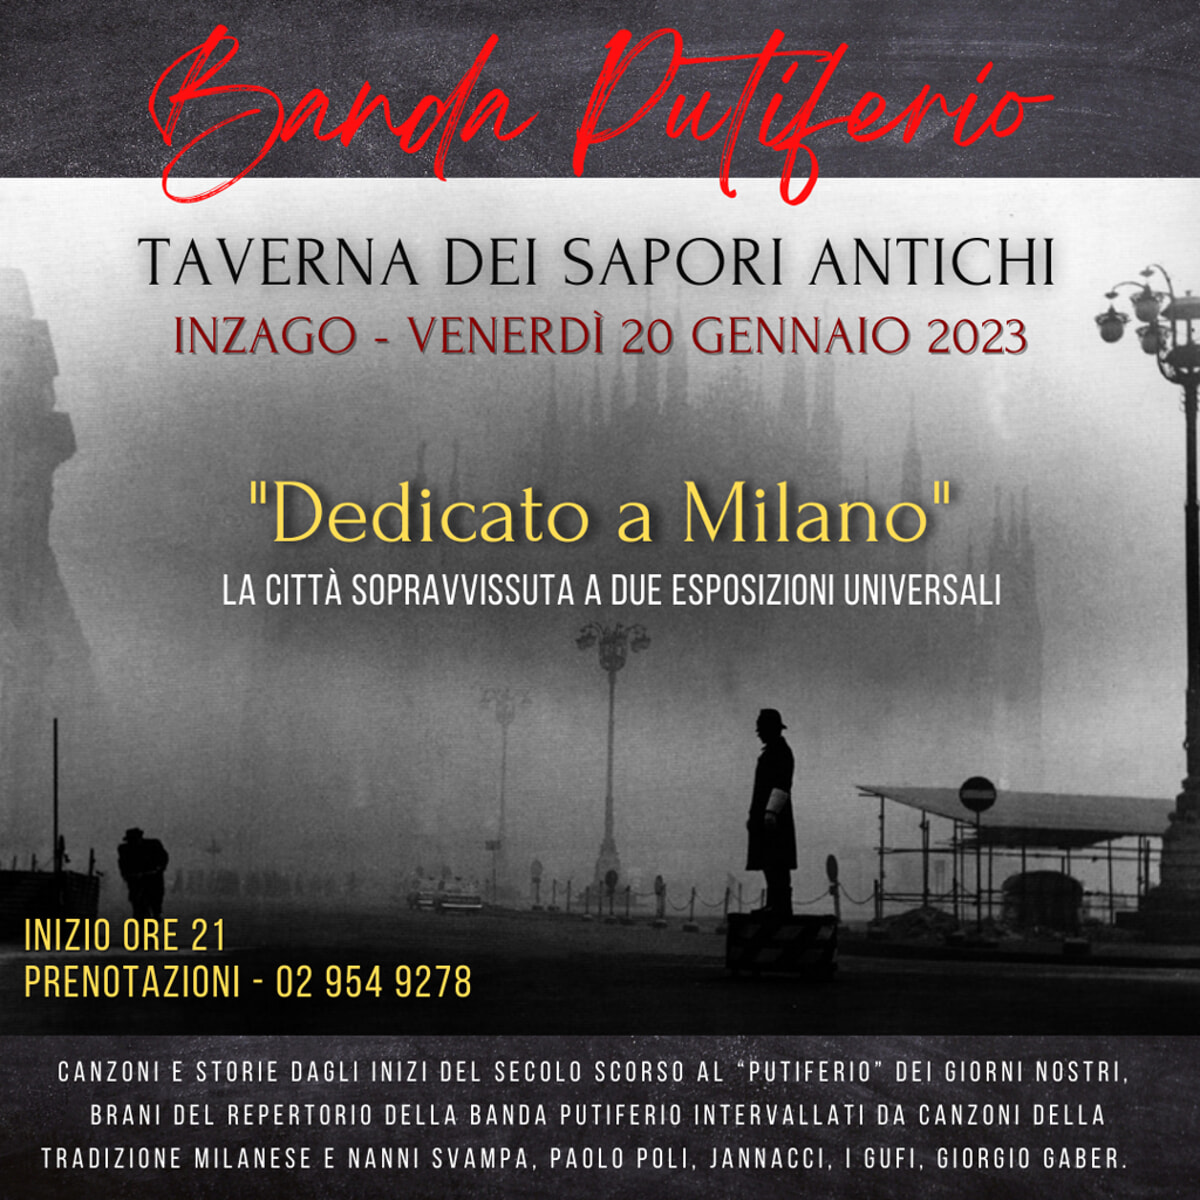 “Dedicato a Milano”, banda putiferio @trattoria dei sapori antichi